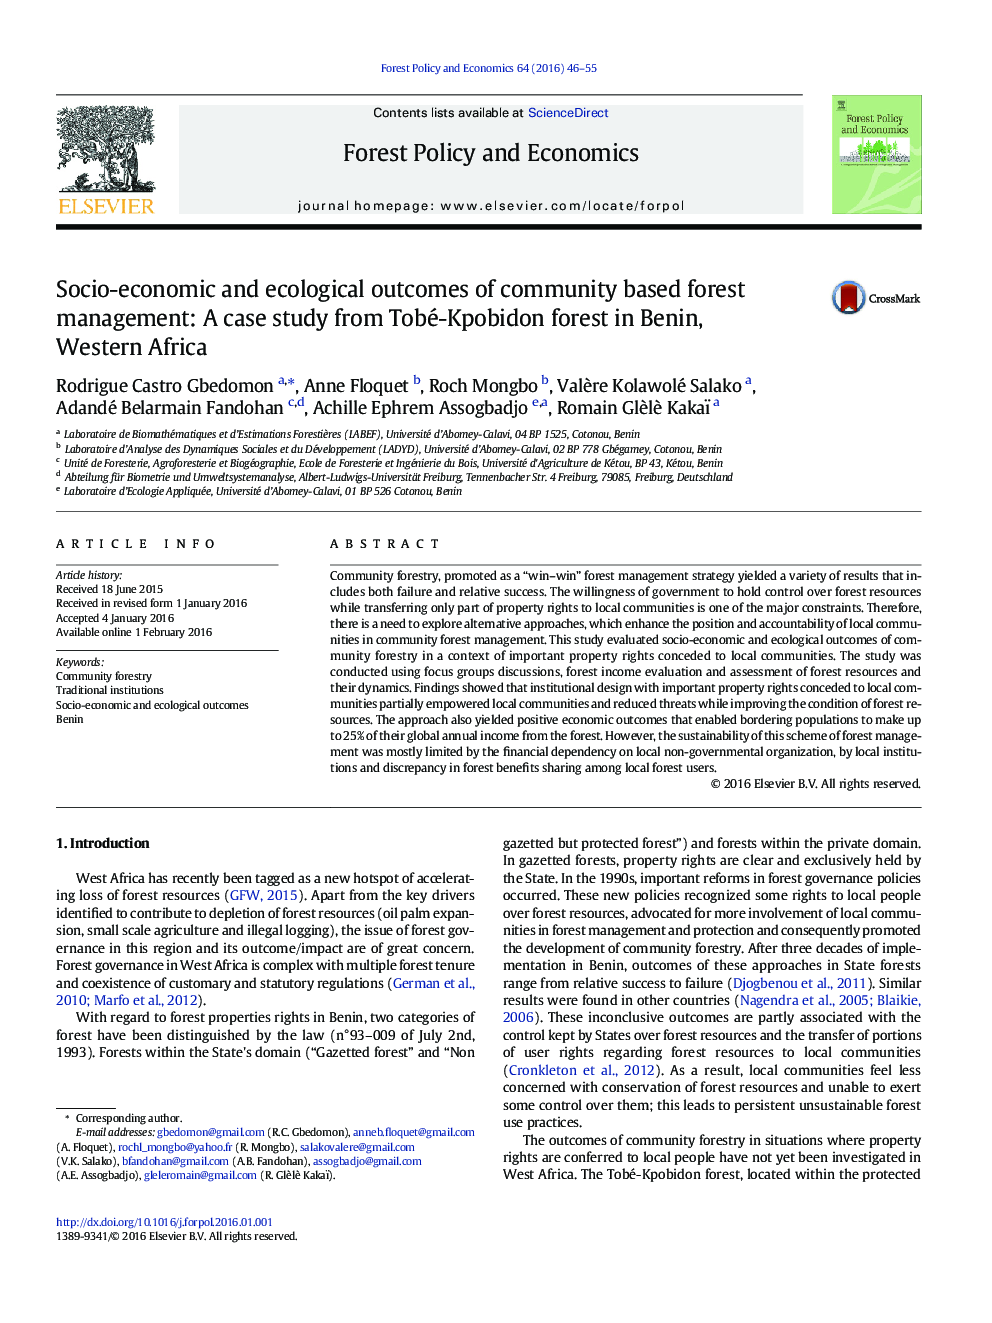 نتایج اجتماعی و اقتصادی و زیست محیطی مدیریت جنگل مبتنی بر جامعه: مطالعه موردی از جنگل توبه-کوپابیدن در بنین، آفریقای غربی